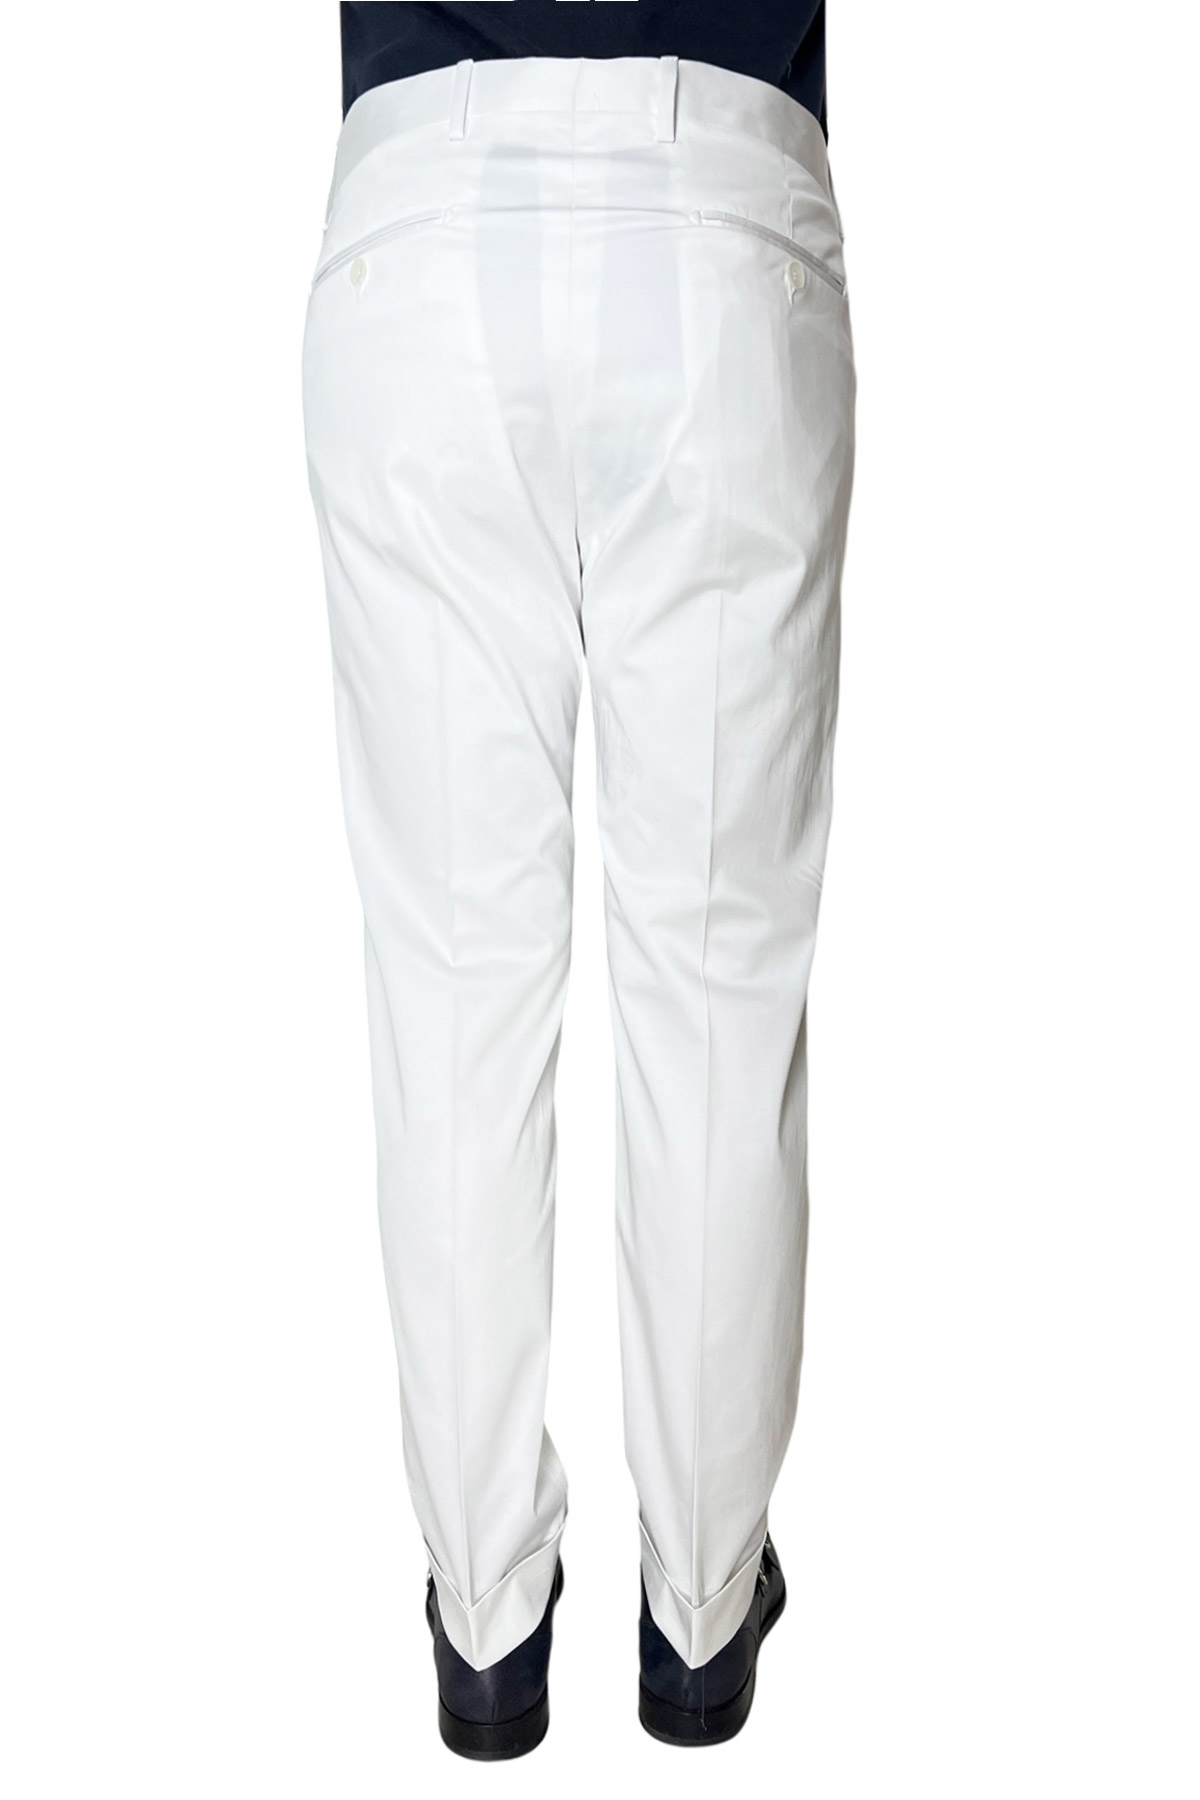 Pantalone uomo Bianco di cotone leggermente elastico tasca america con una pinces e risvolto 4cm